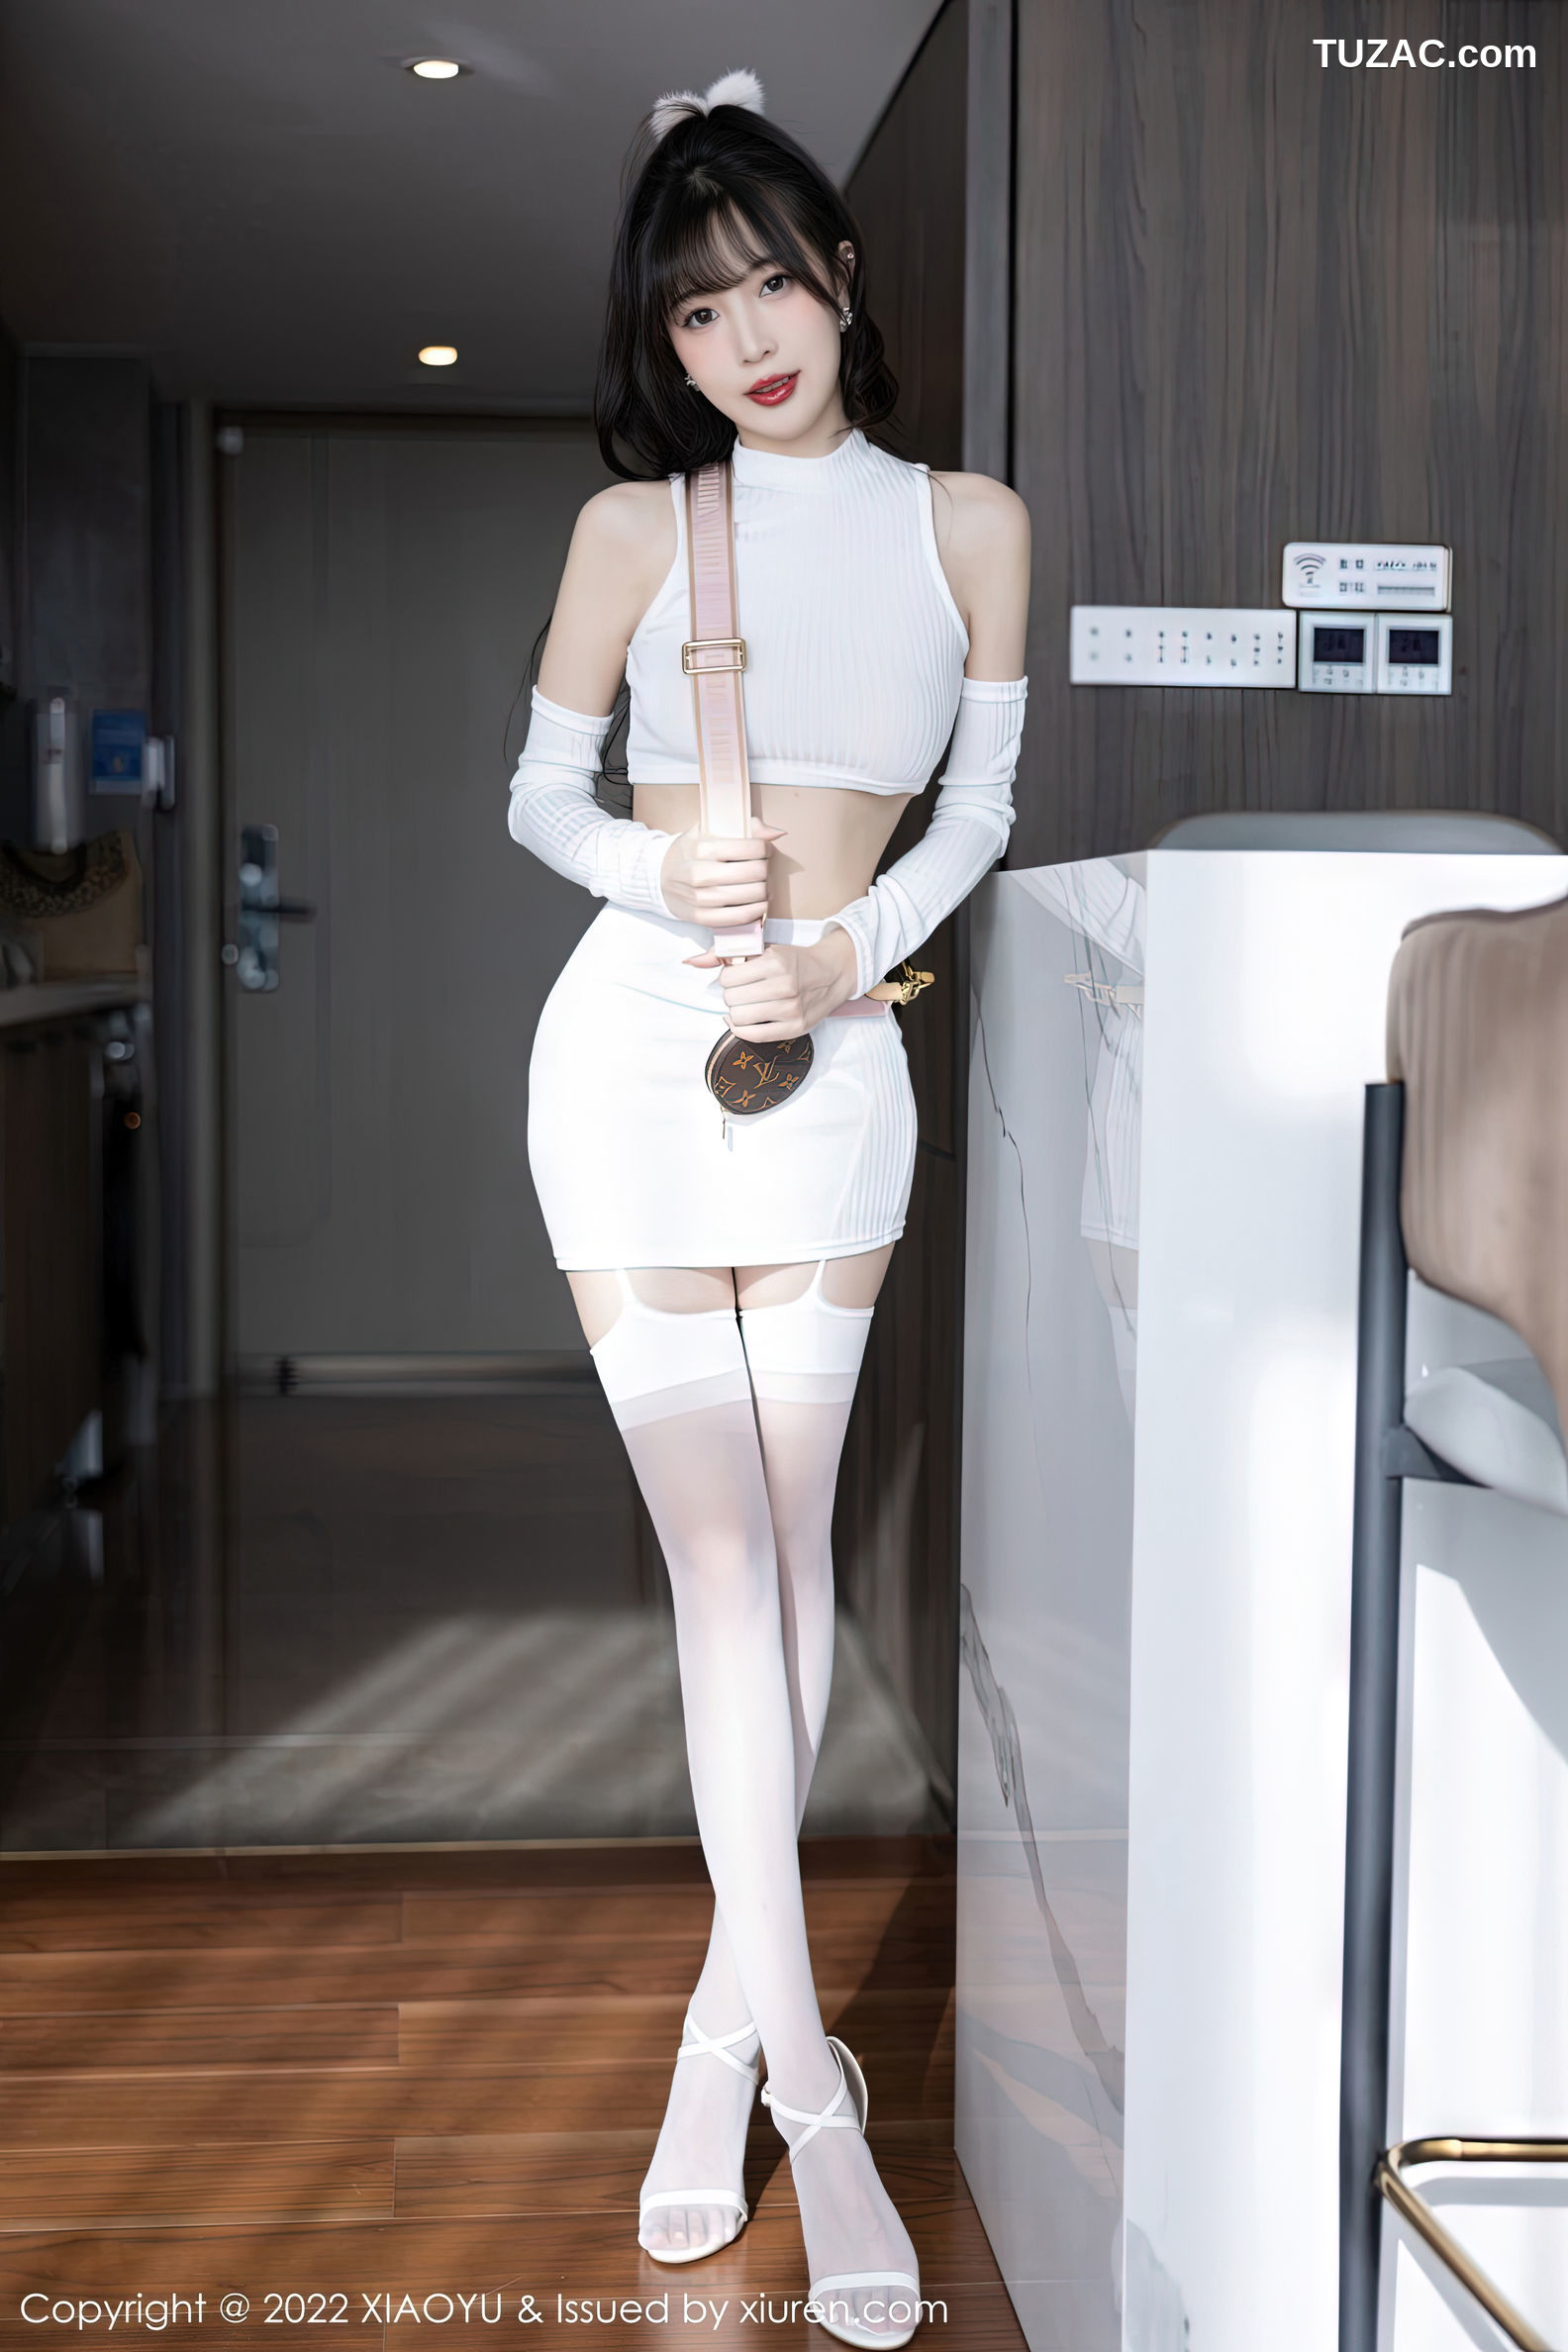 XiaoYu语画界-928-林星阑-白色抹胸内衣白丝吊带袜-2022.12.19